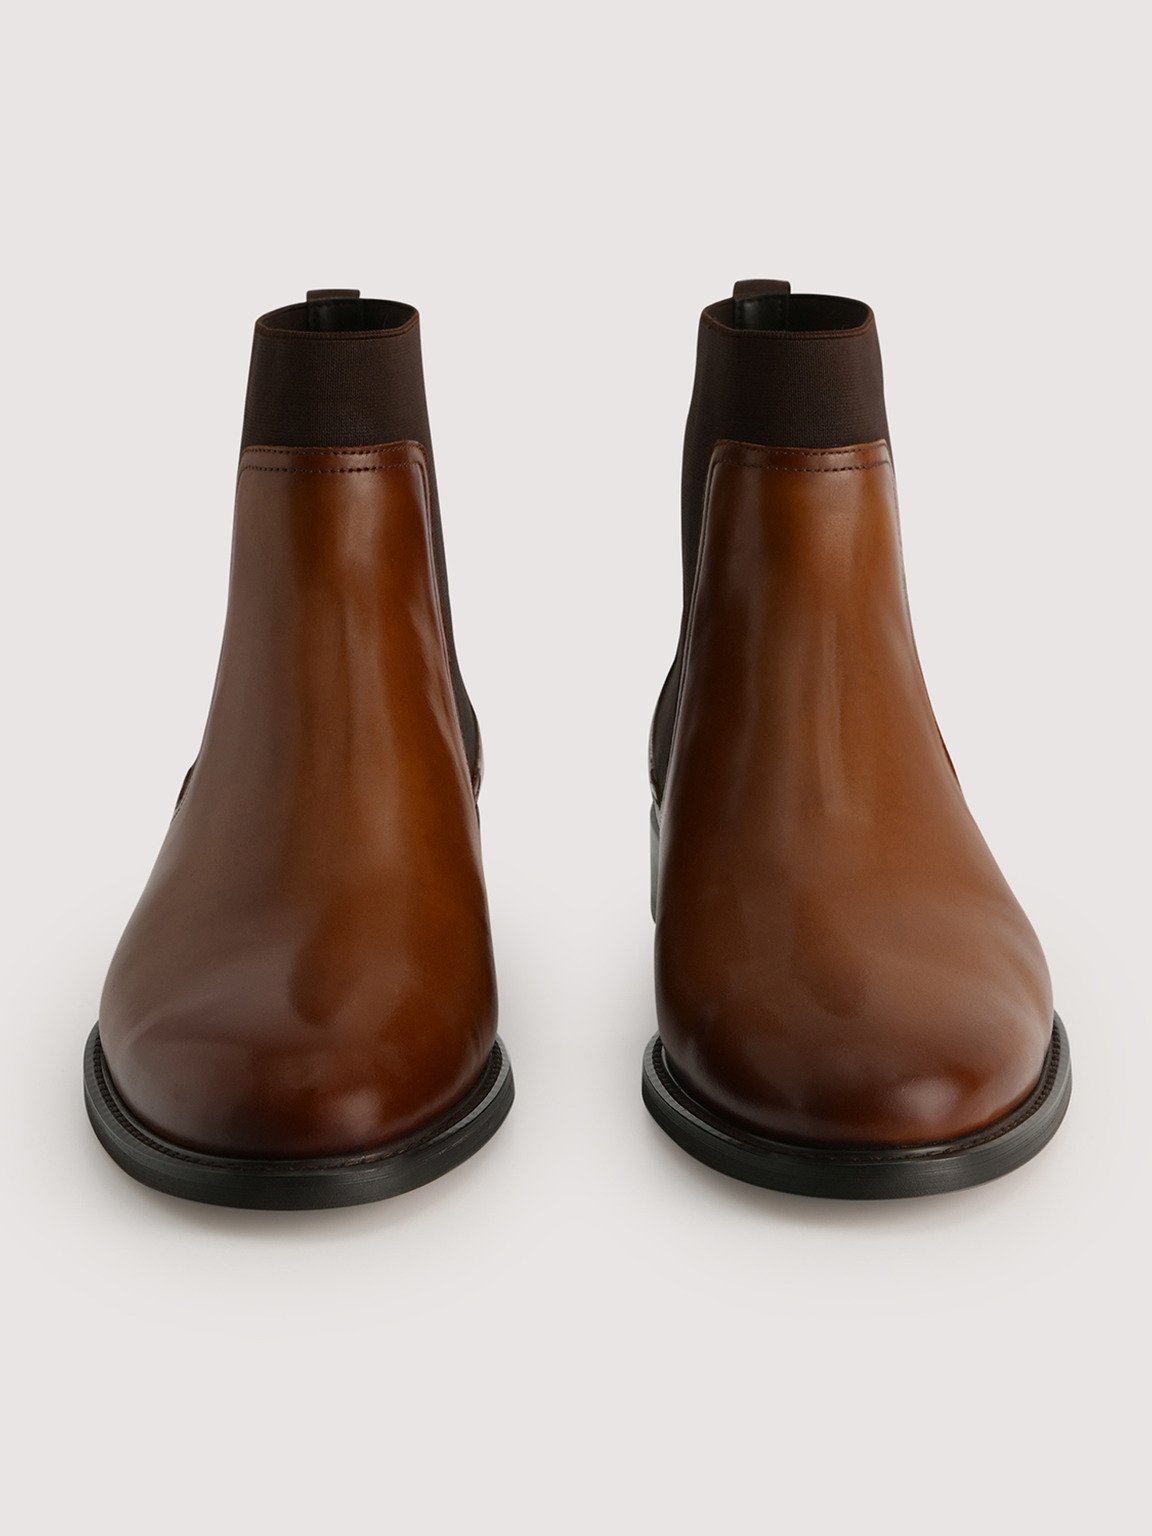 Sonny Leather Chelsea Boots, Cognac